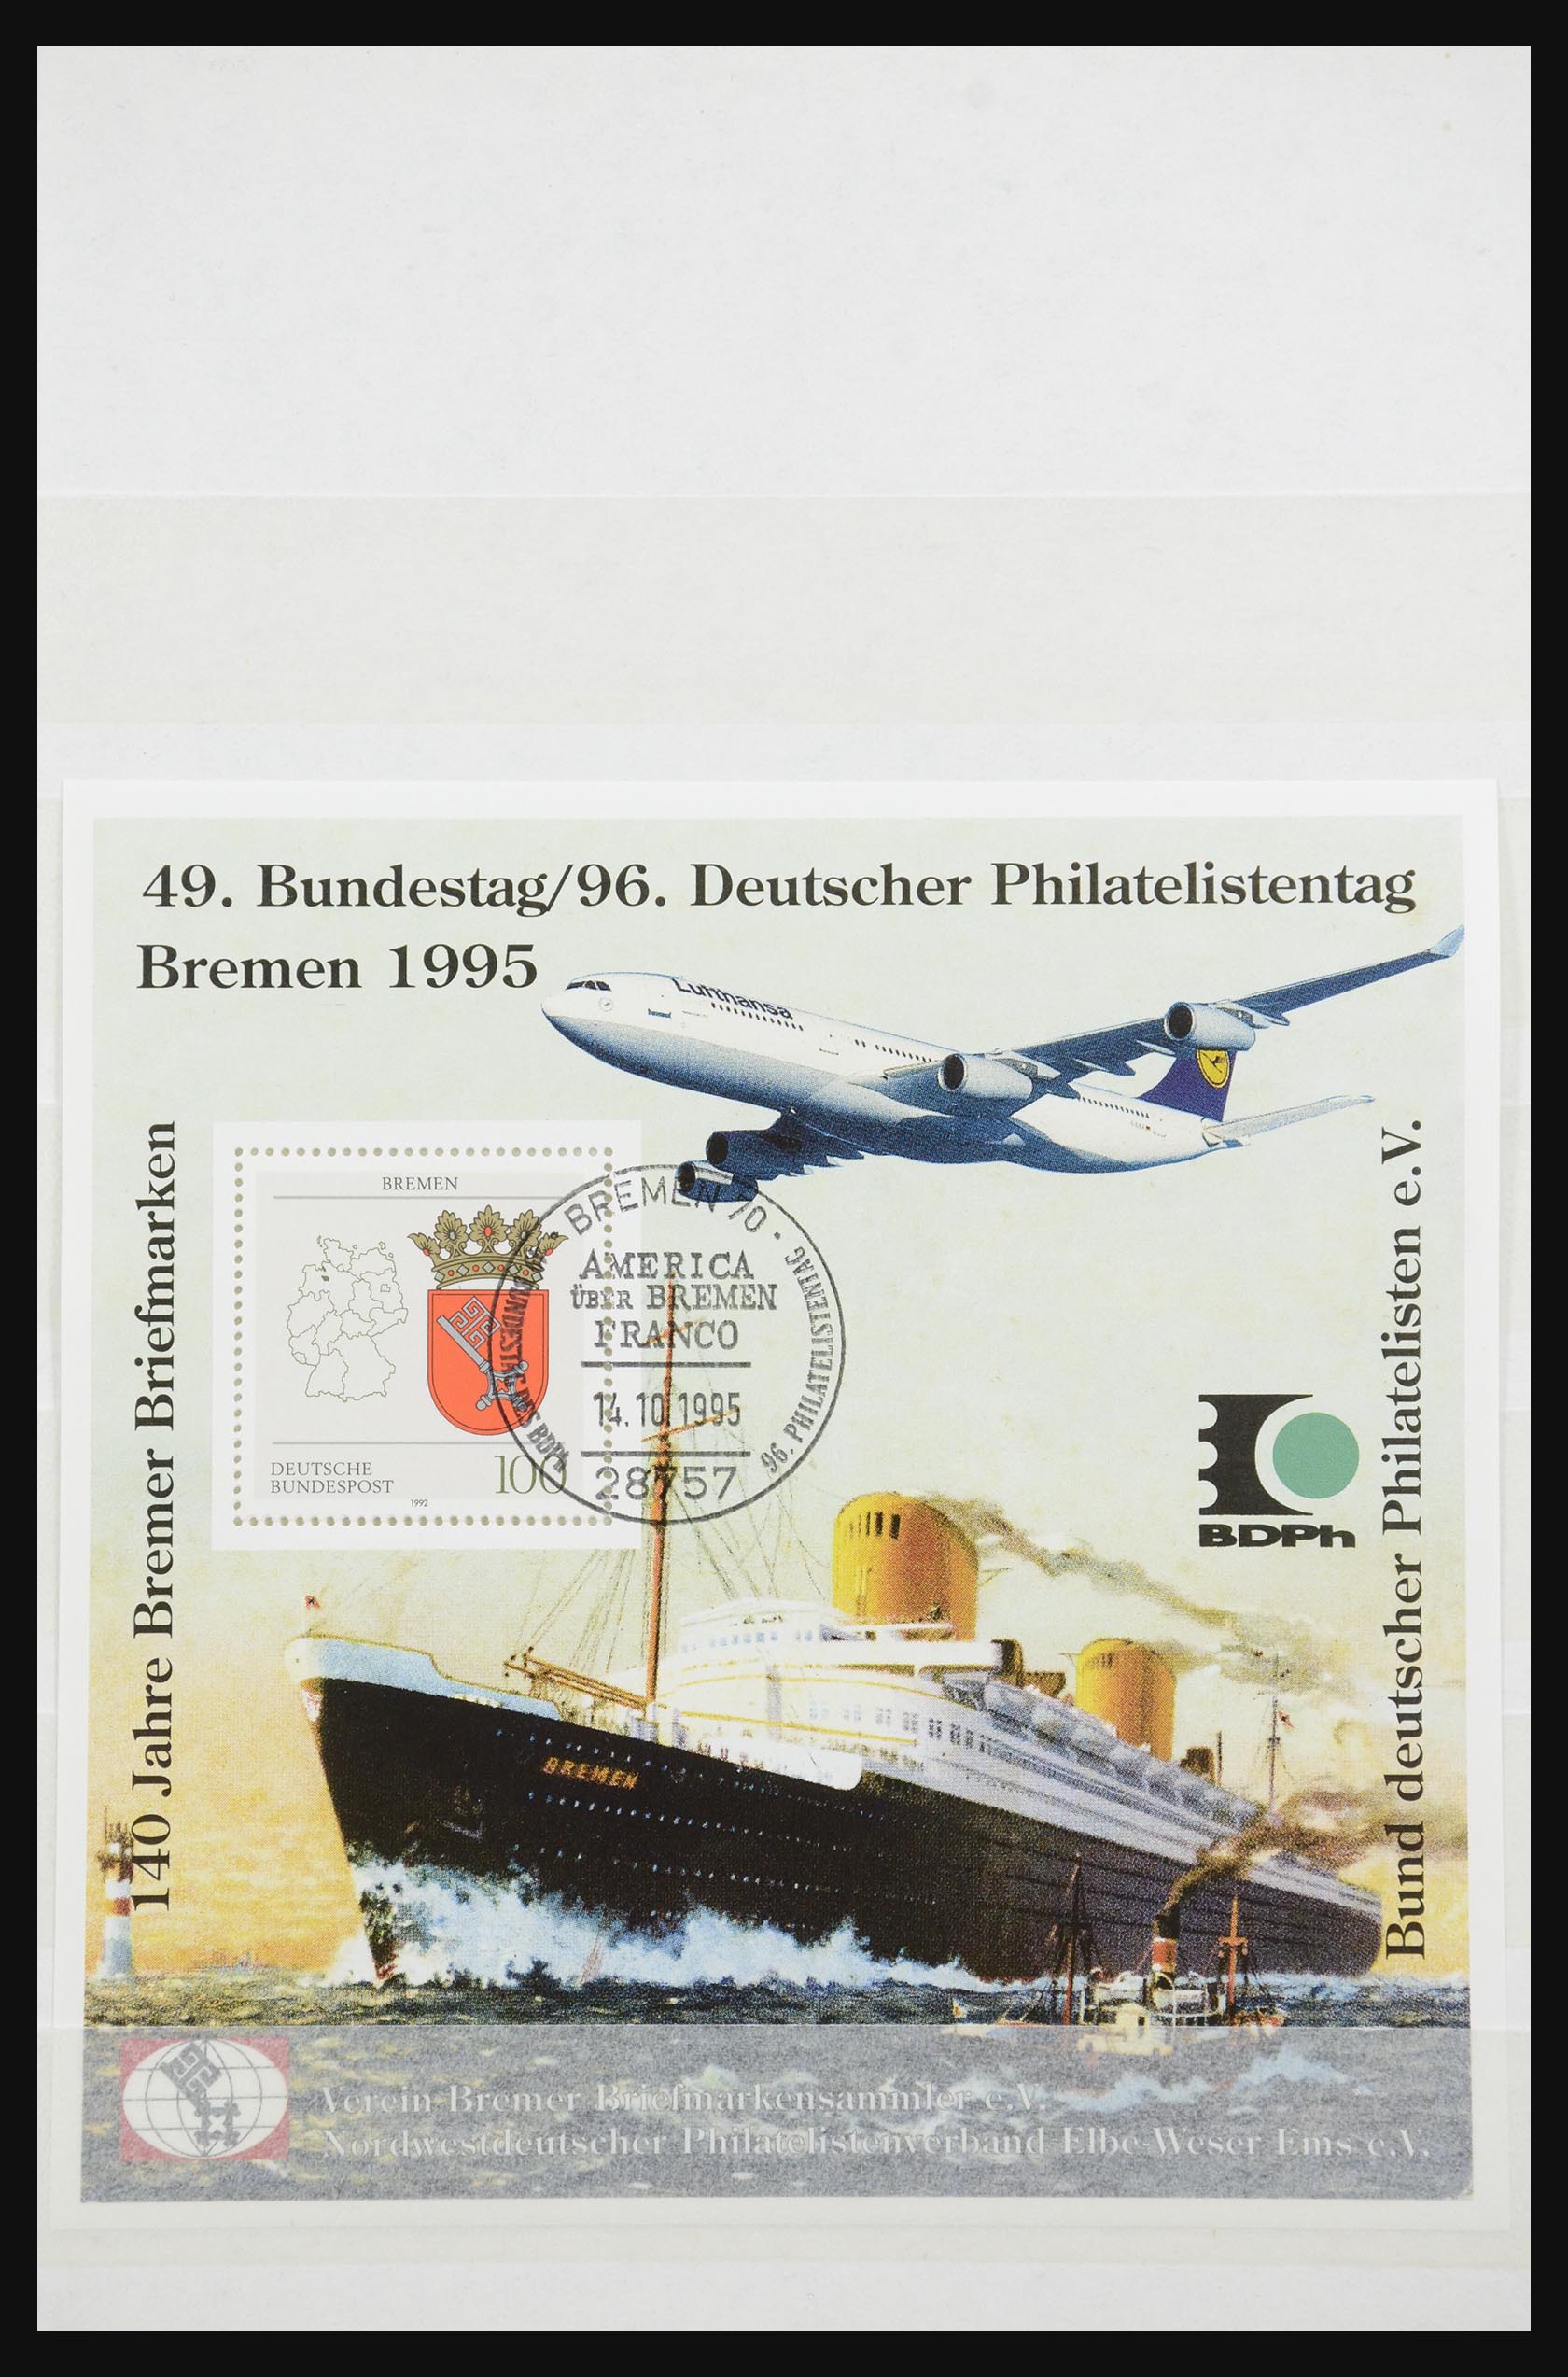 32050 033 - 32050 Bundespost speciale blokken 1980-2010.